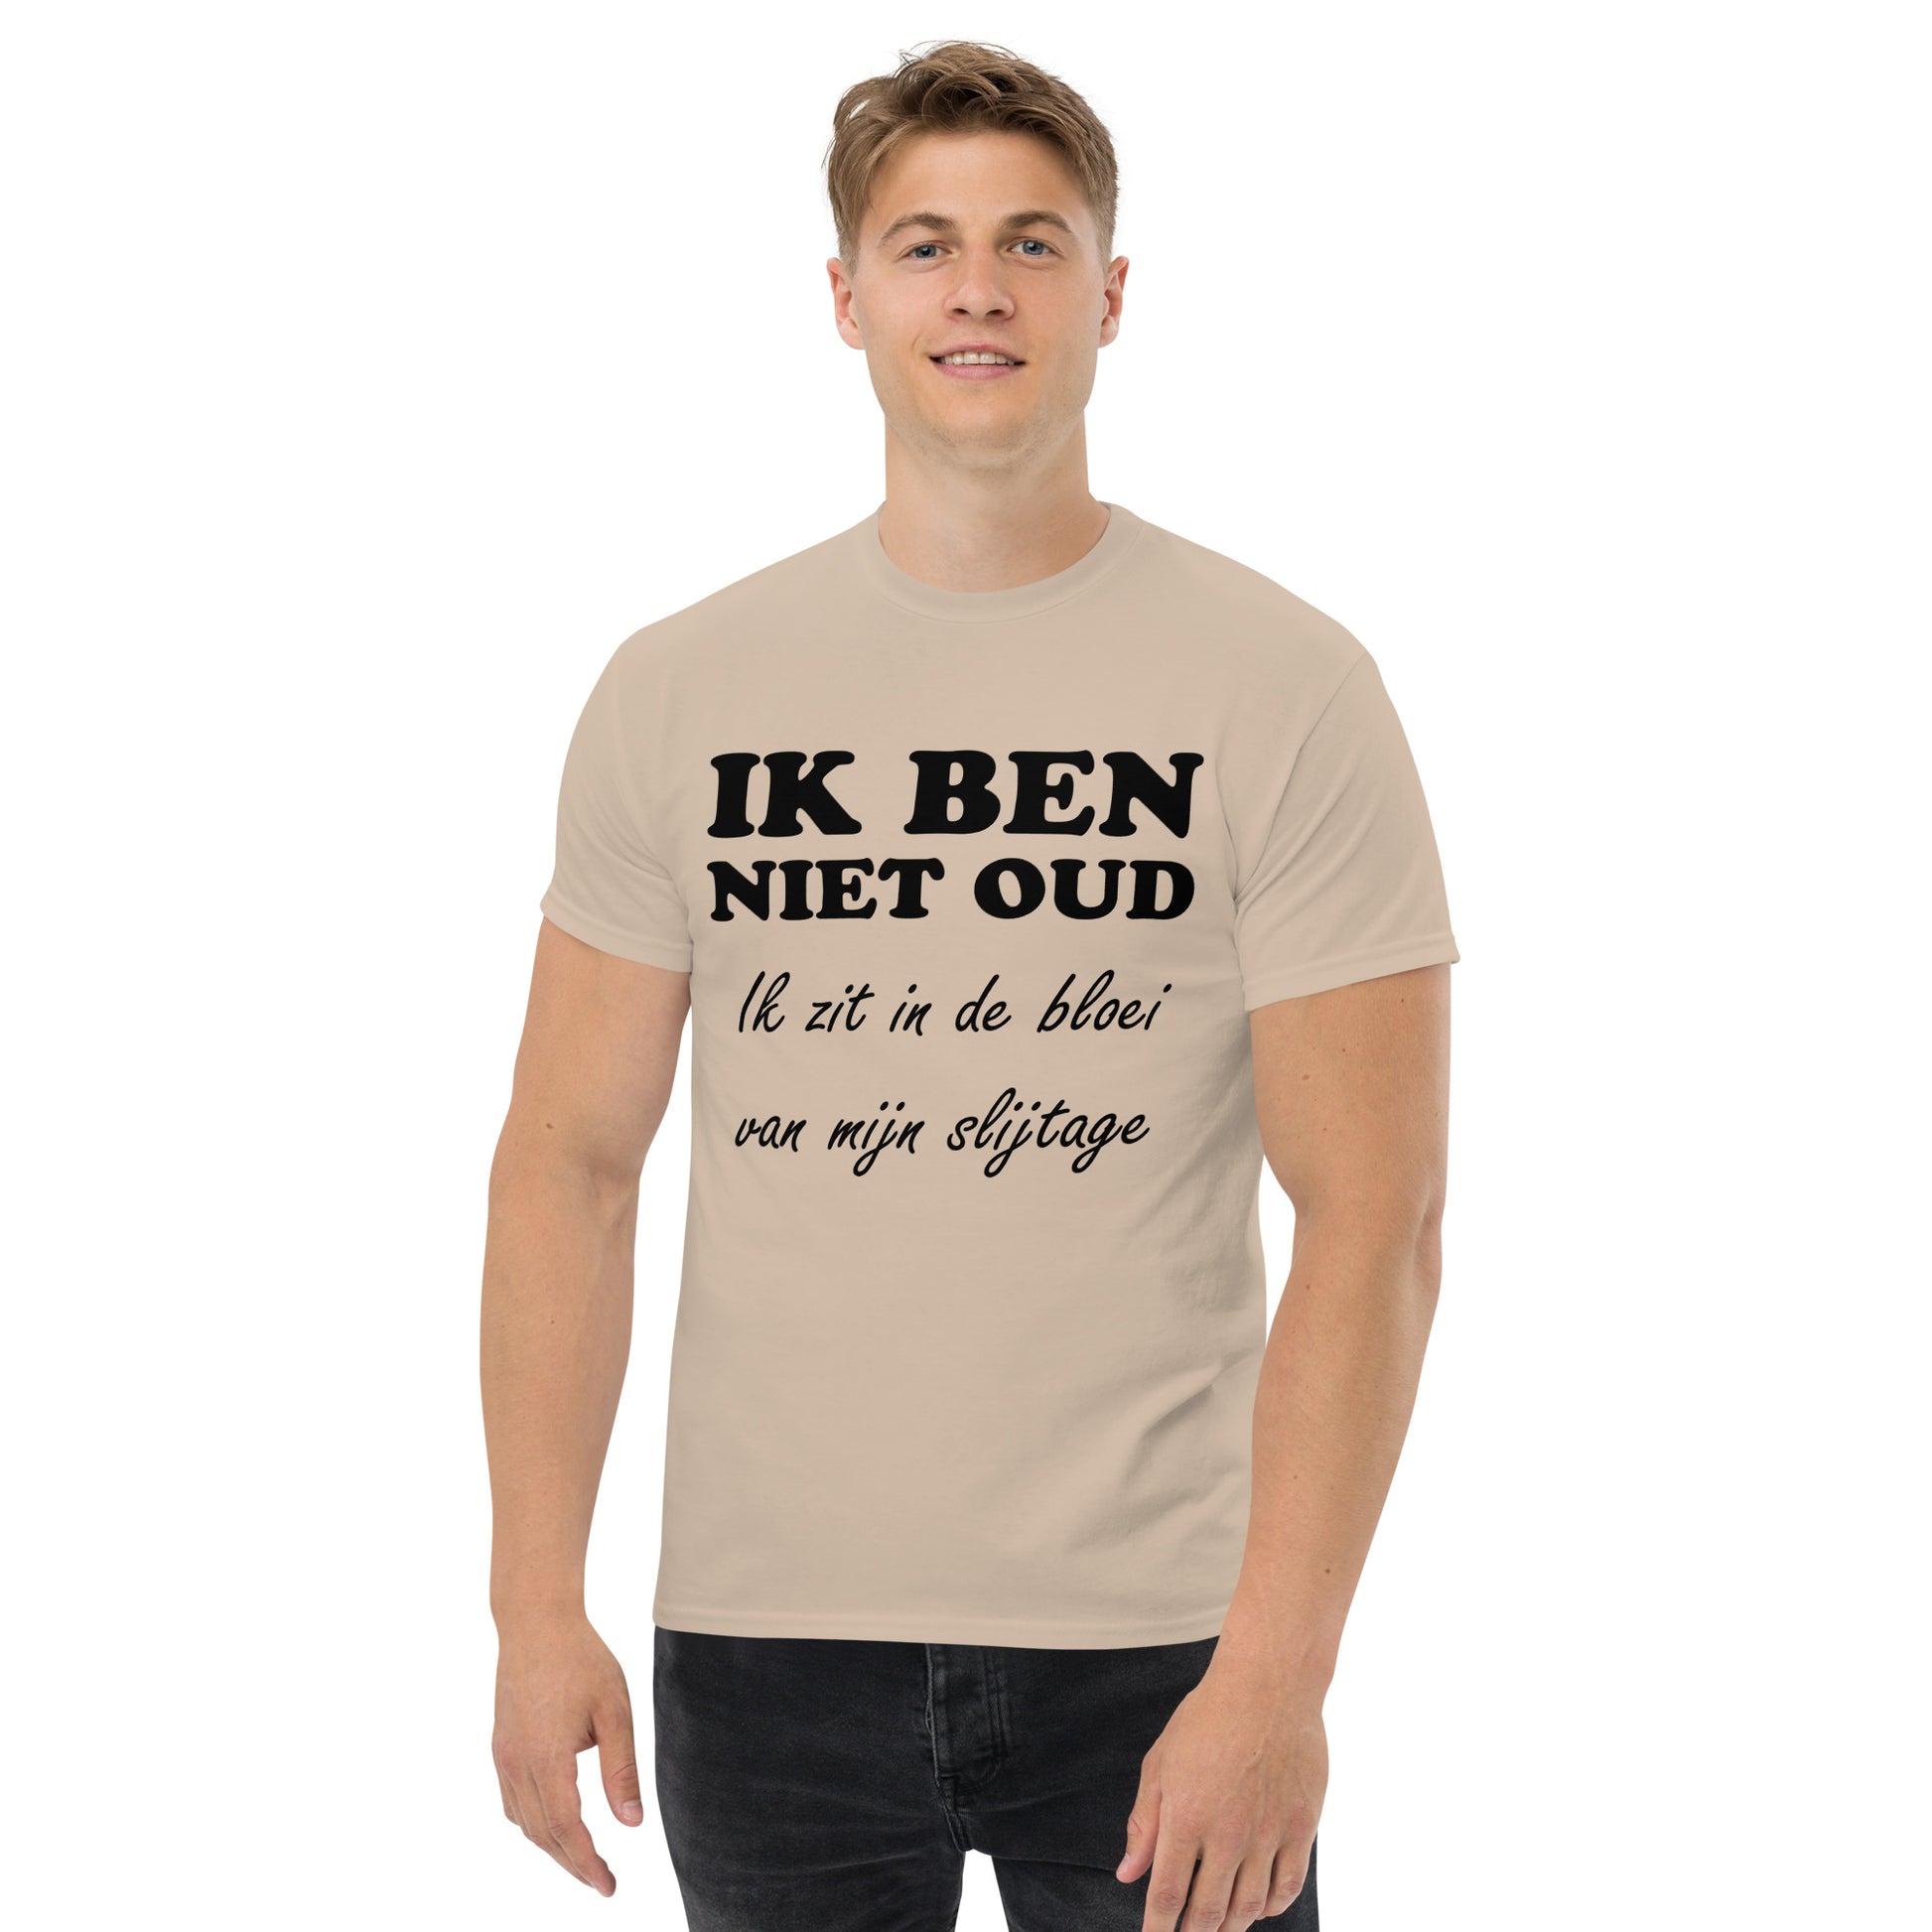 Sand T-shirt with the text "IK BEN NIET OUD ik zit in de bloei van mijn slijtage"